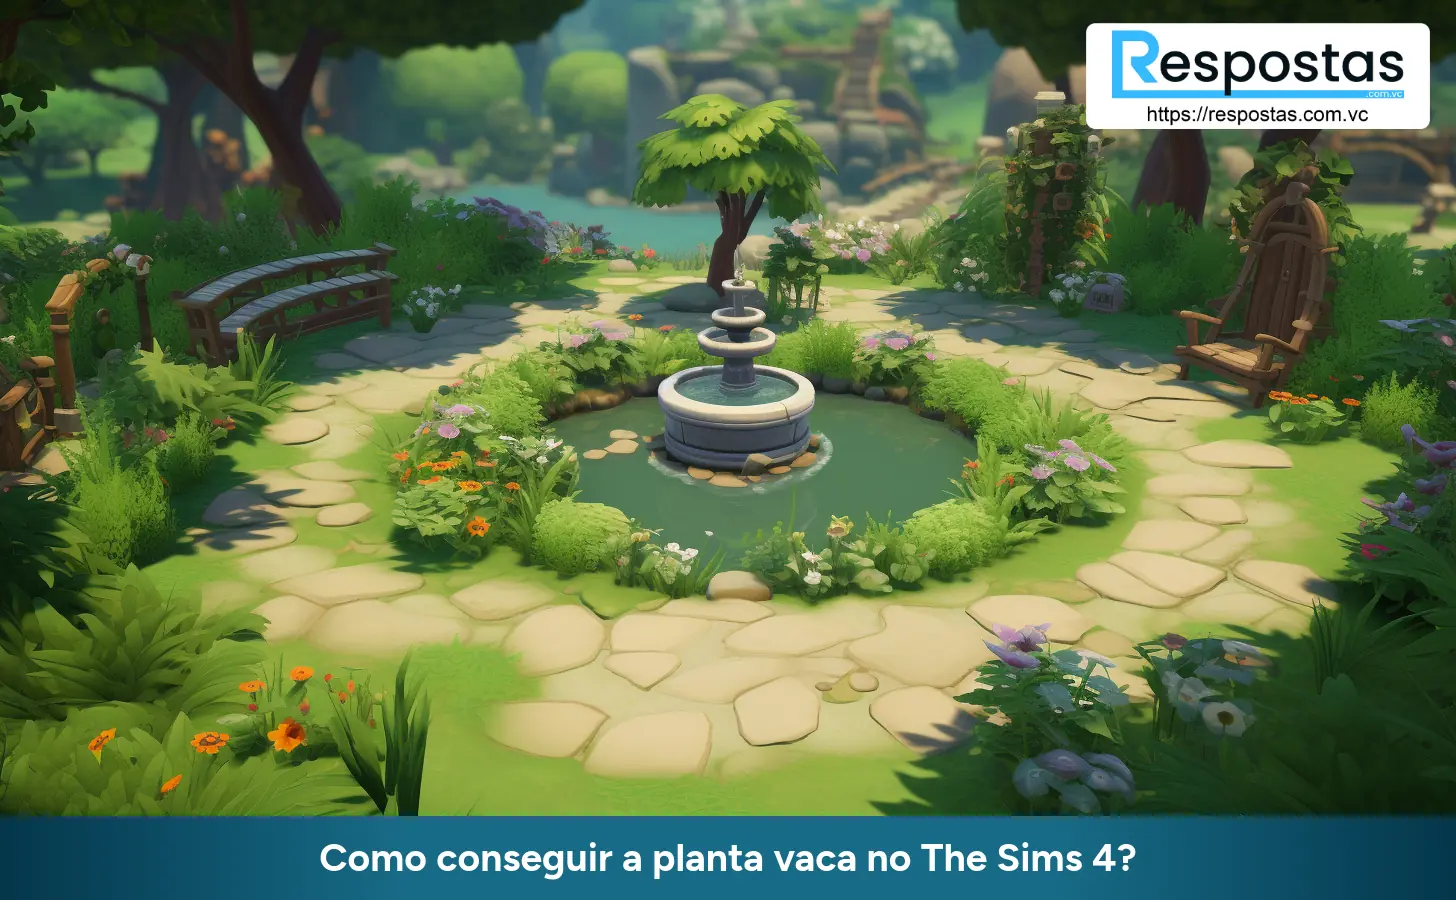 Como conseguir a planta vaca no The Sims 4?